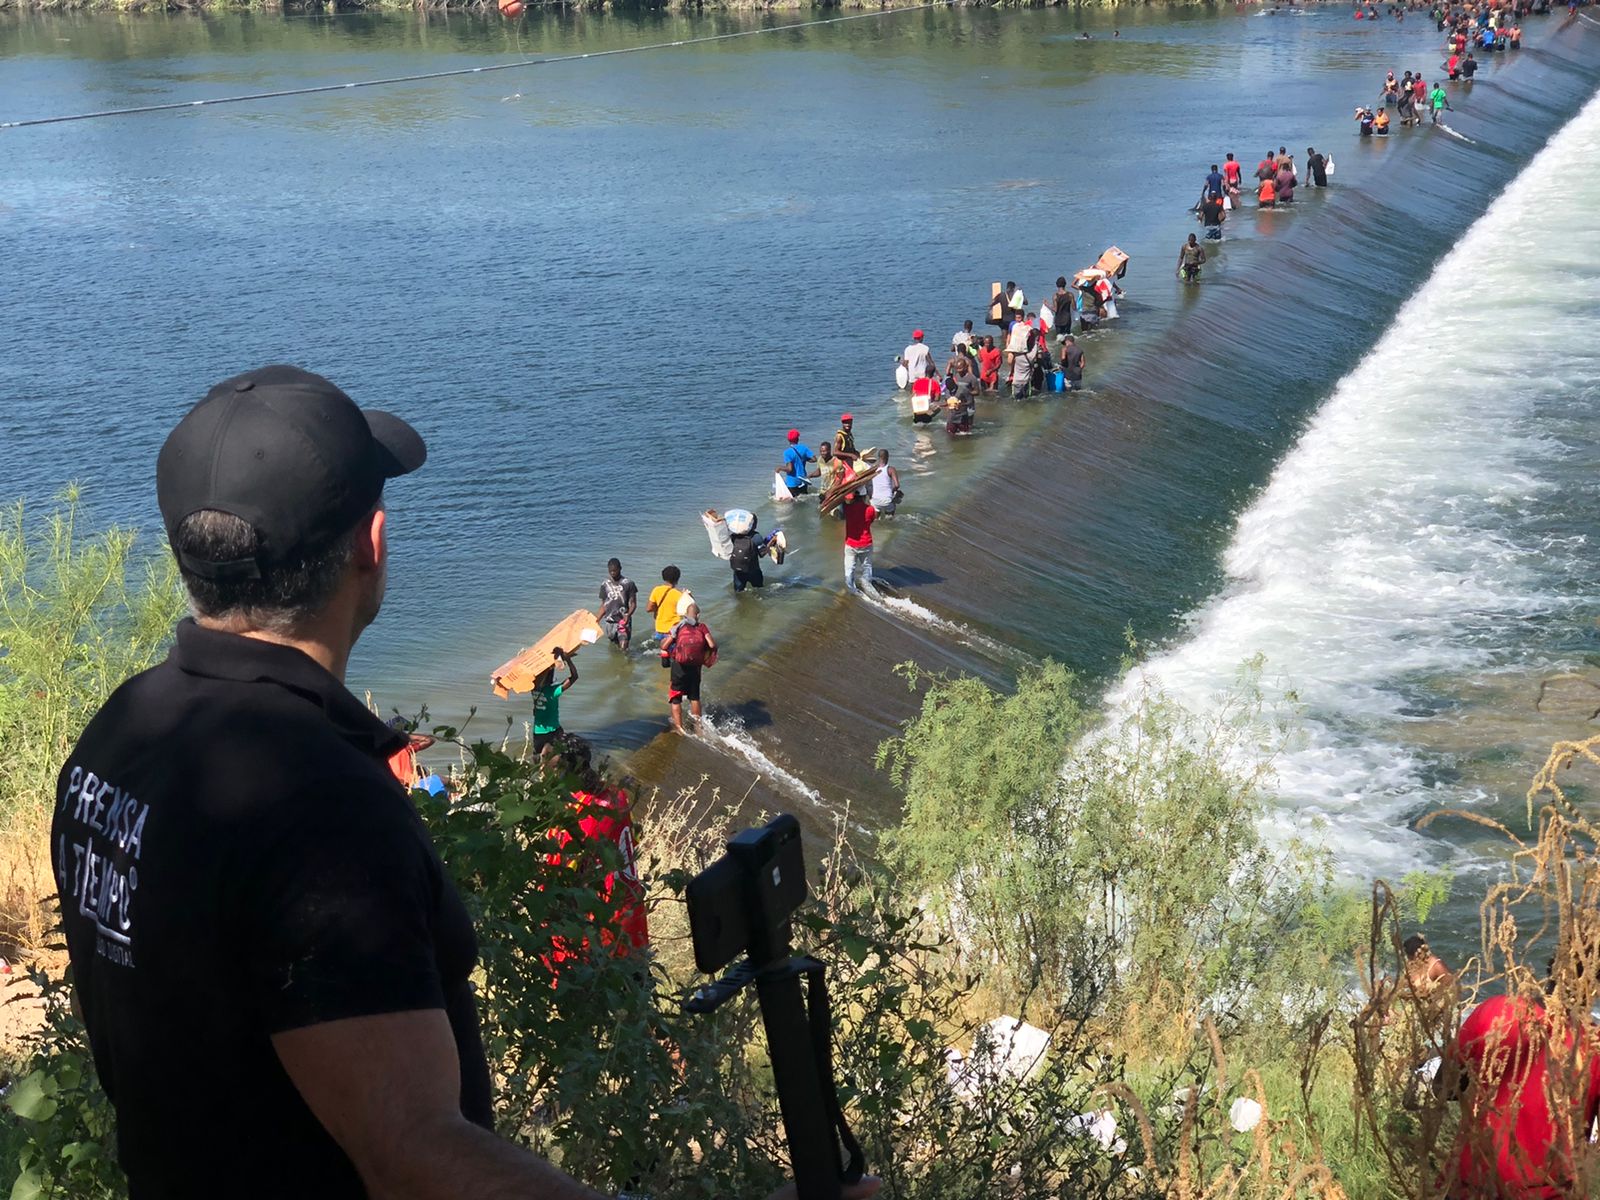 Es probable que, con las medidas anunciadas por USA, la cantidad de migrantes que cruzan el Río Bravo disminuya. Mientras tanto, el escenario en Acuña sigue siendo el mismo. | Foto: Cortesía de Guillermo Flores.